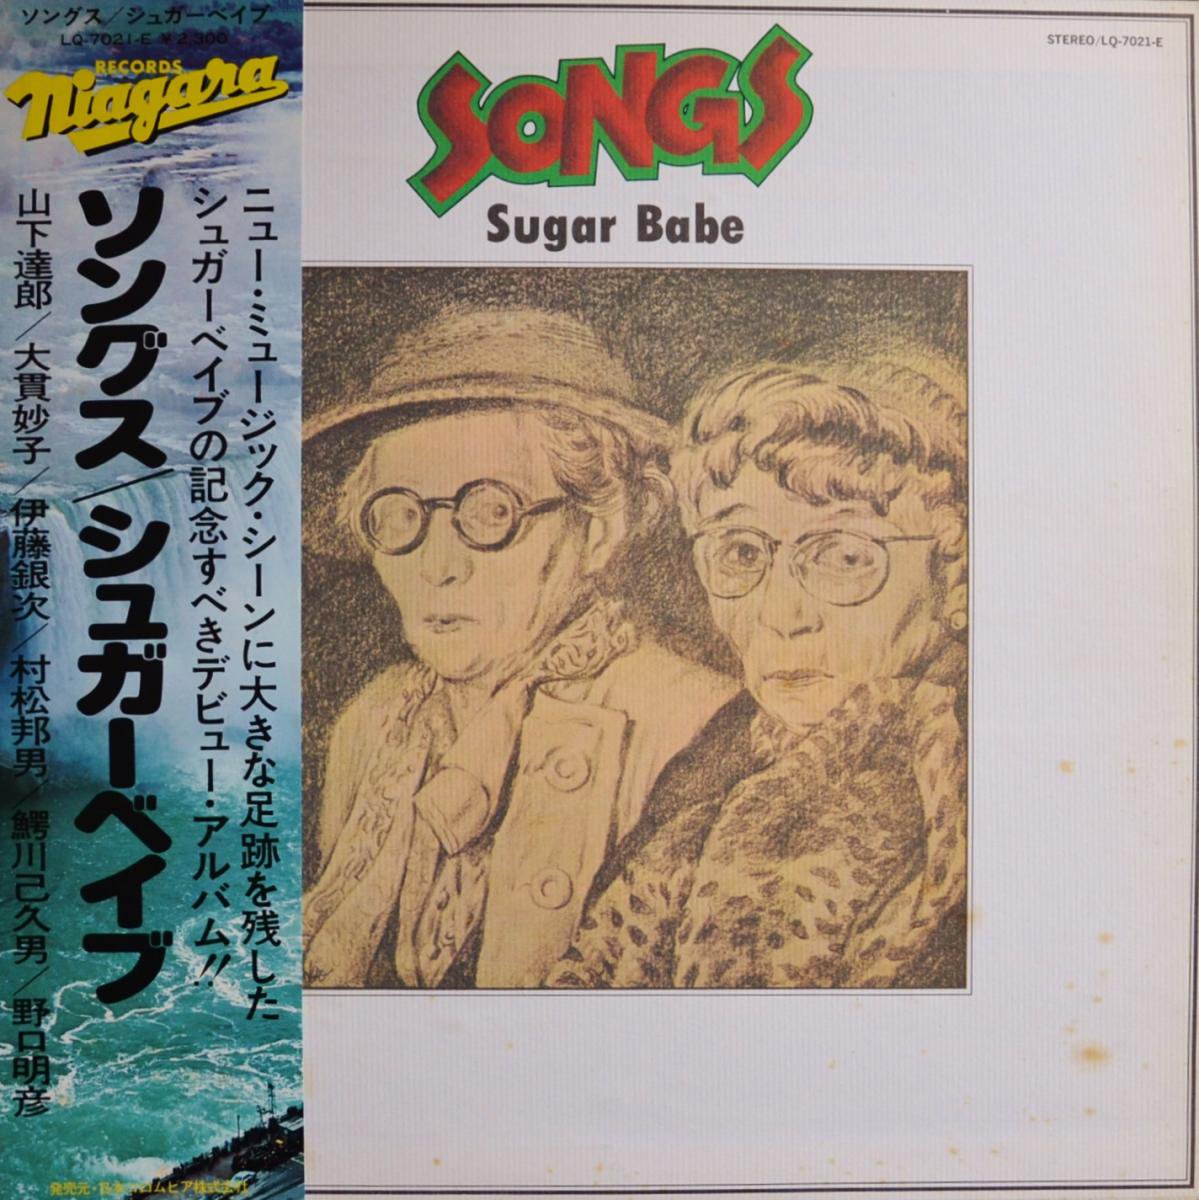 シュガーベイブ SUGAR BABE / ソングス SONGS (LP)